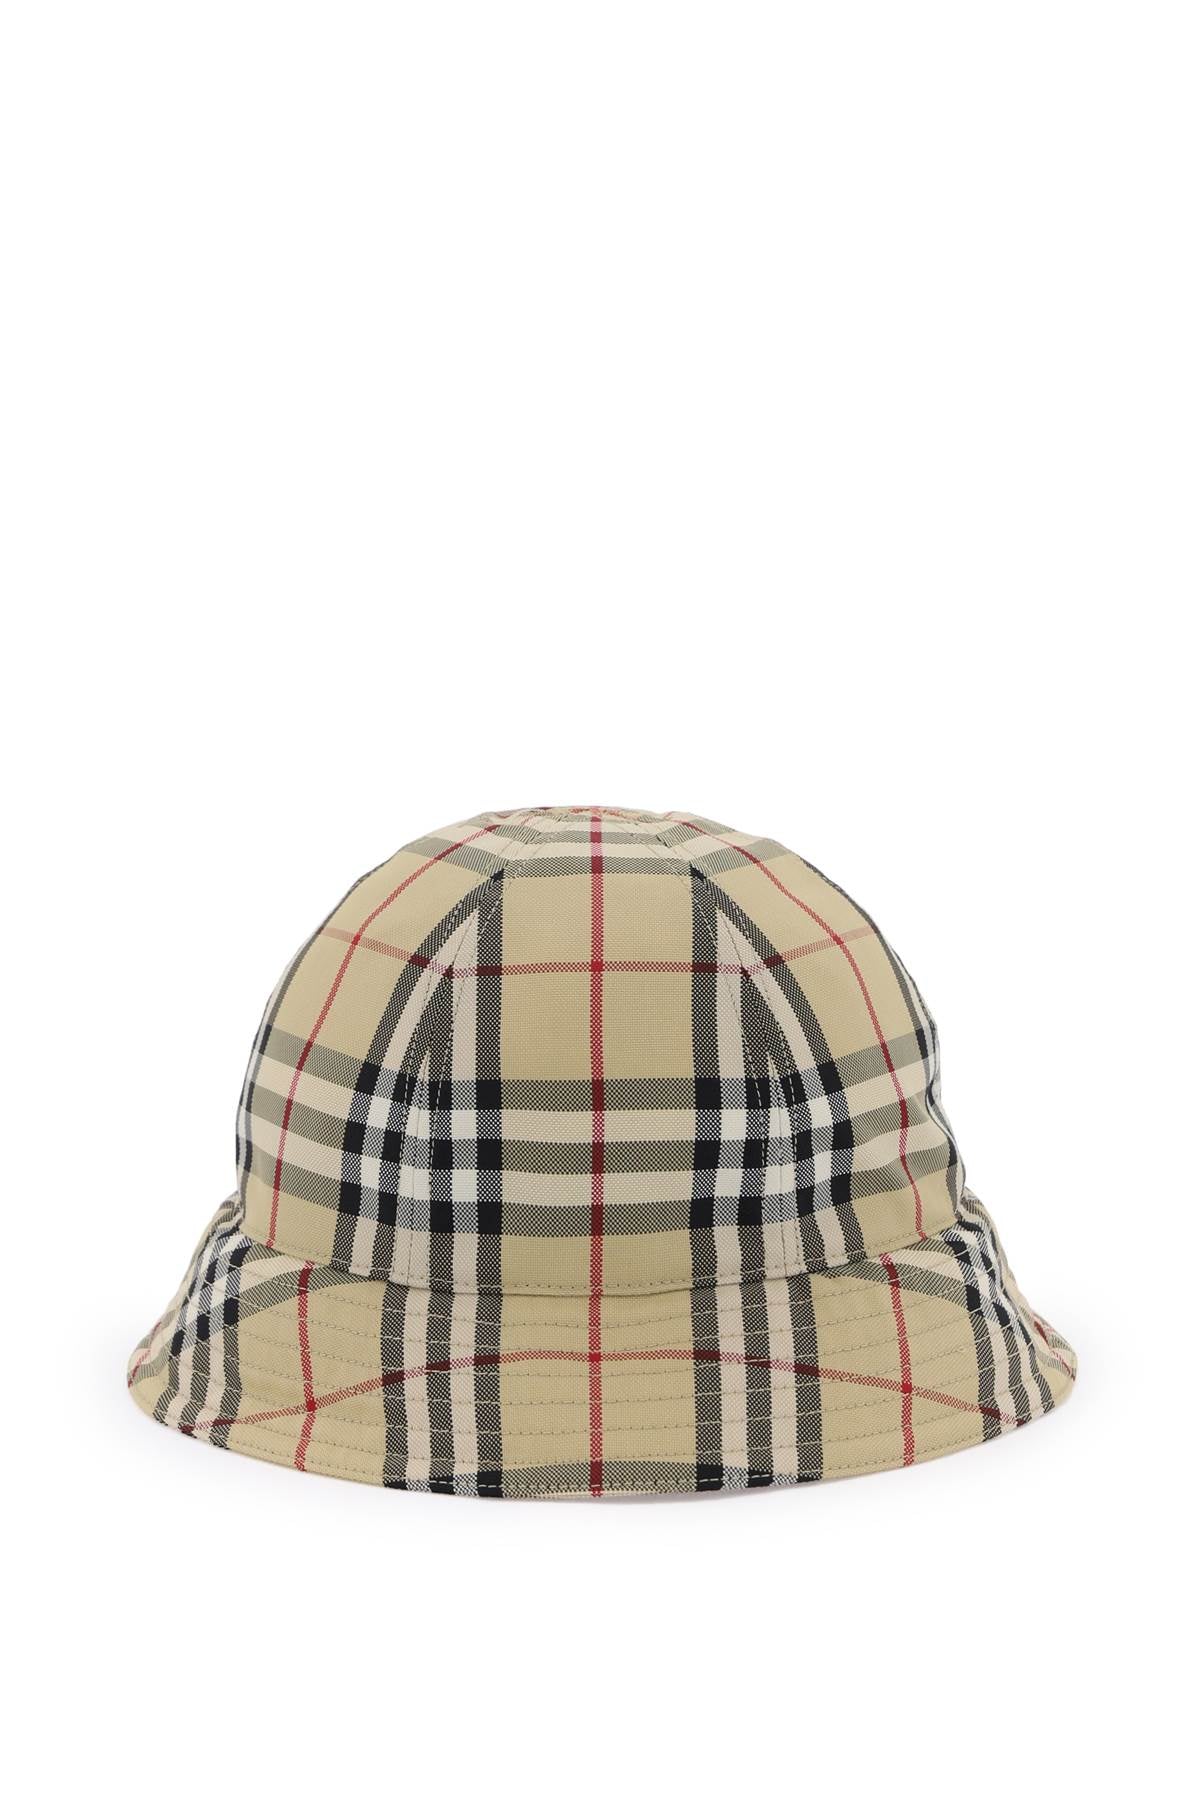 Burberry Burberry nylon bucket hat